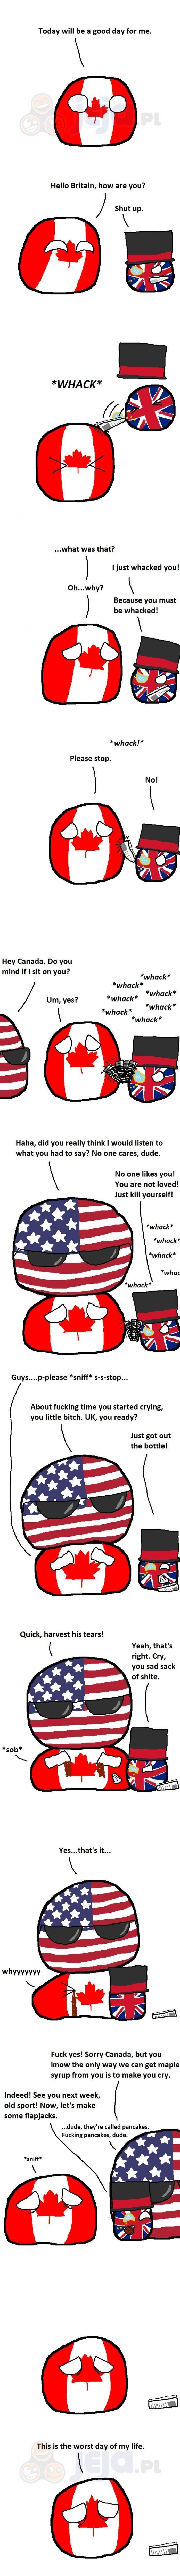 Prześladowana Kanada